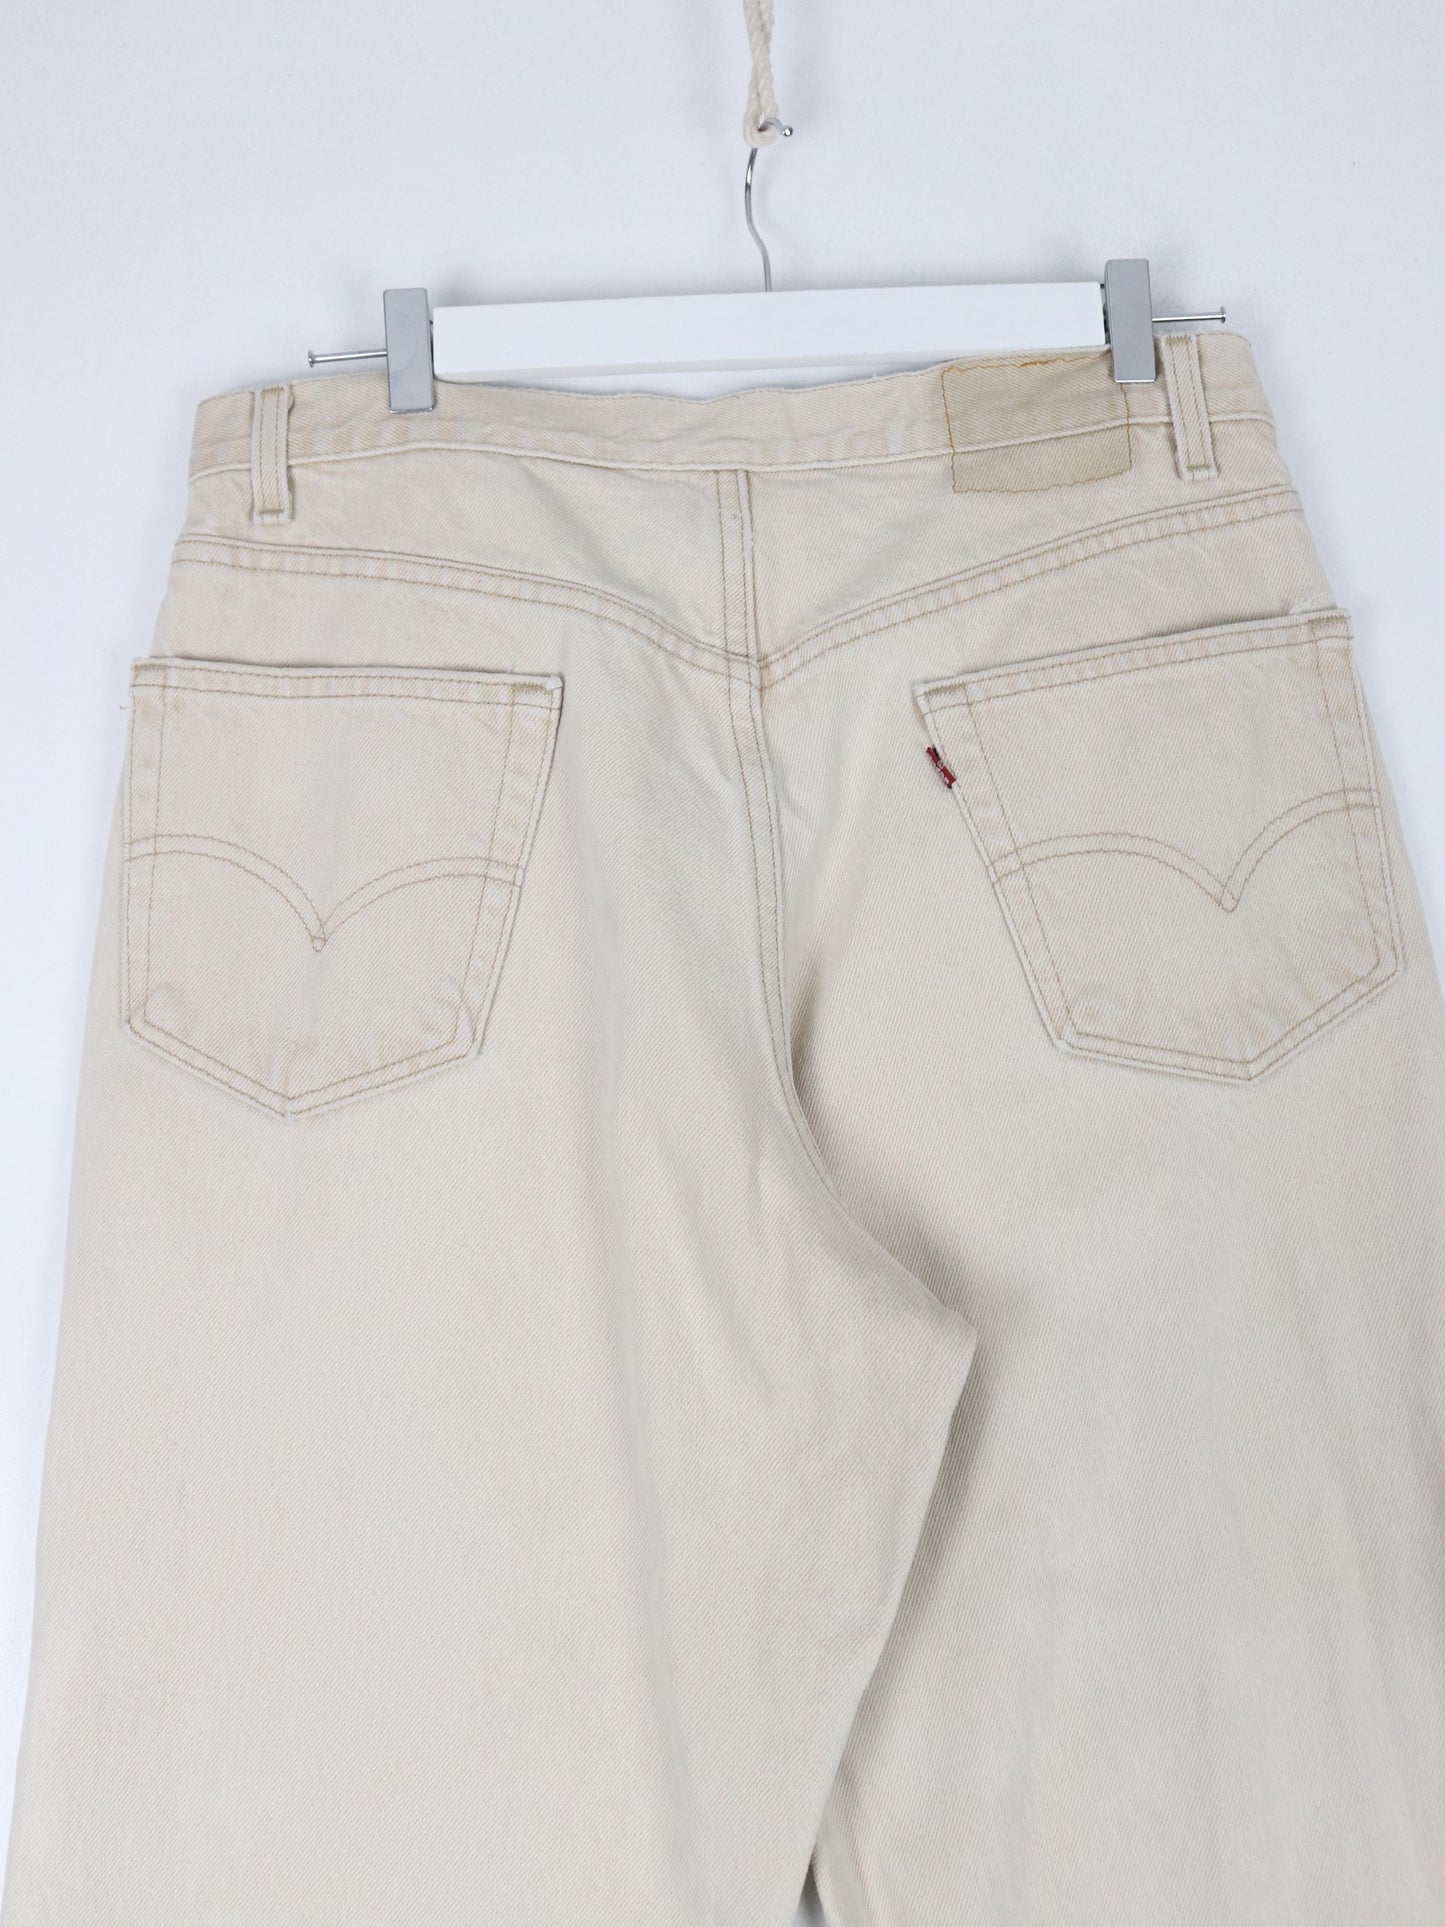 Vintage Levi's Pants Fits Mens 33 x 29 Beige Denim Jeans Relaxed Fit